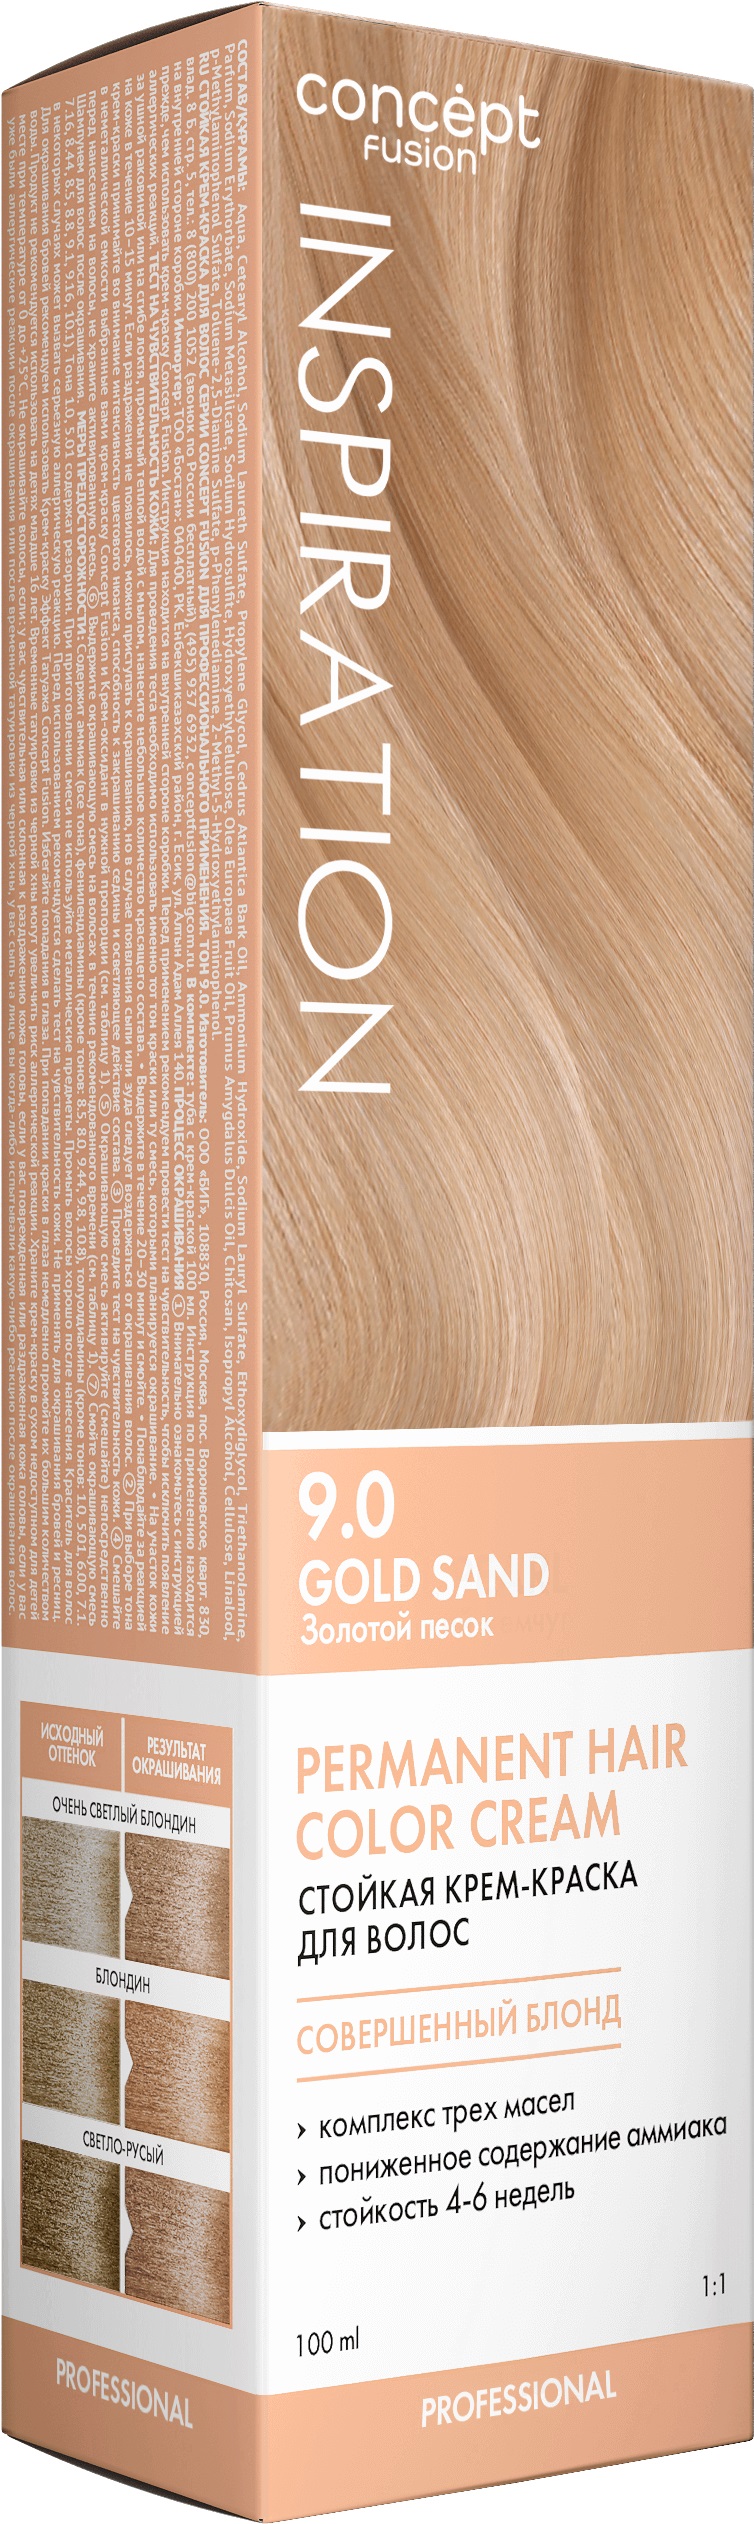 Крем-краска Concept Fusion Inspiration золотой песок, №9.0, 100 мл